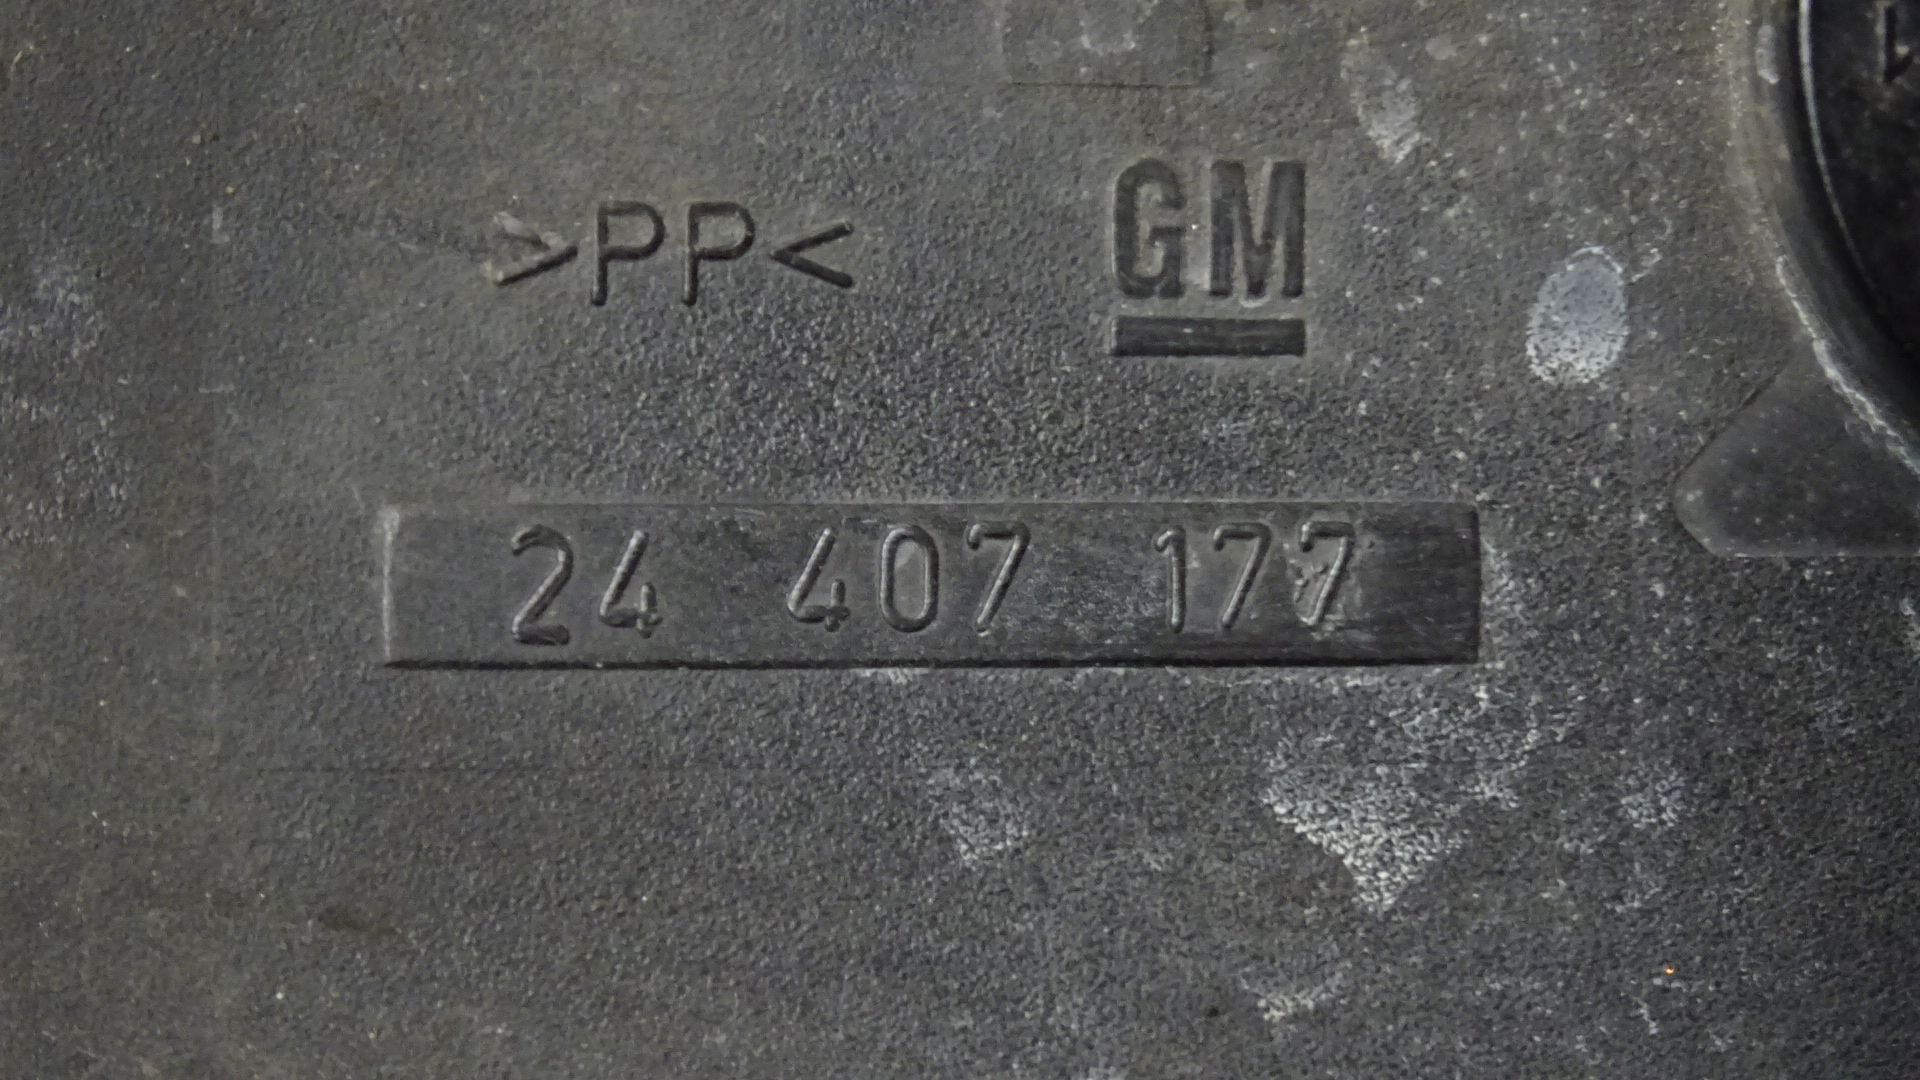 Opel Astra G Bj1999 Nebelscheinwerfer Nebelleuchte rechts 24407177